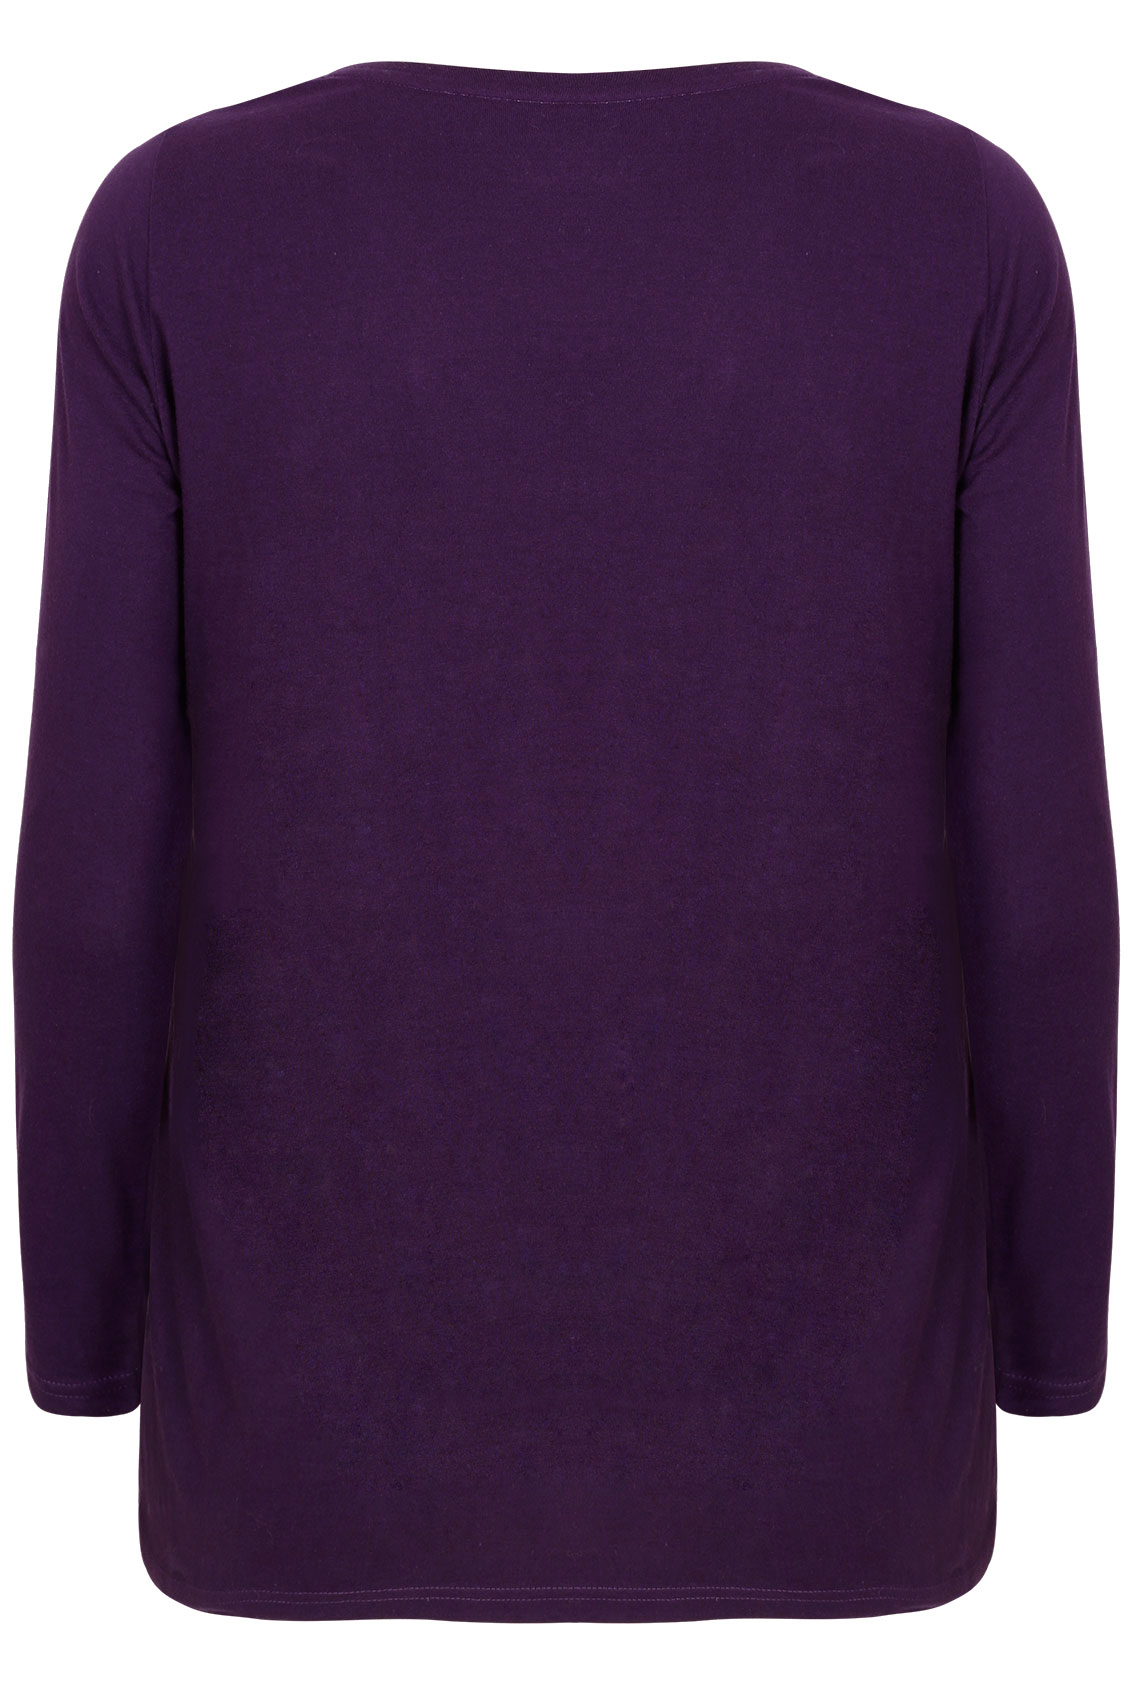 Purple Long Sleeve V Neck Plain T Shirt Plus Size 16 To 36